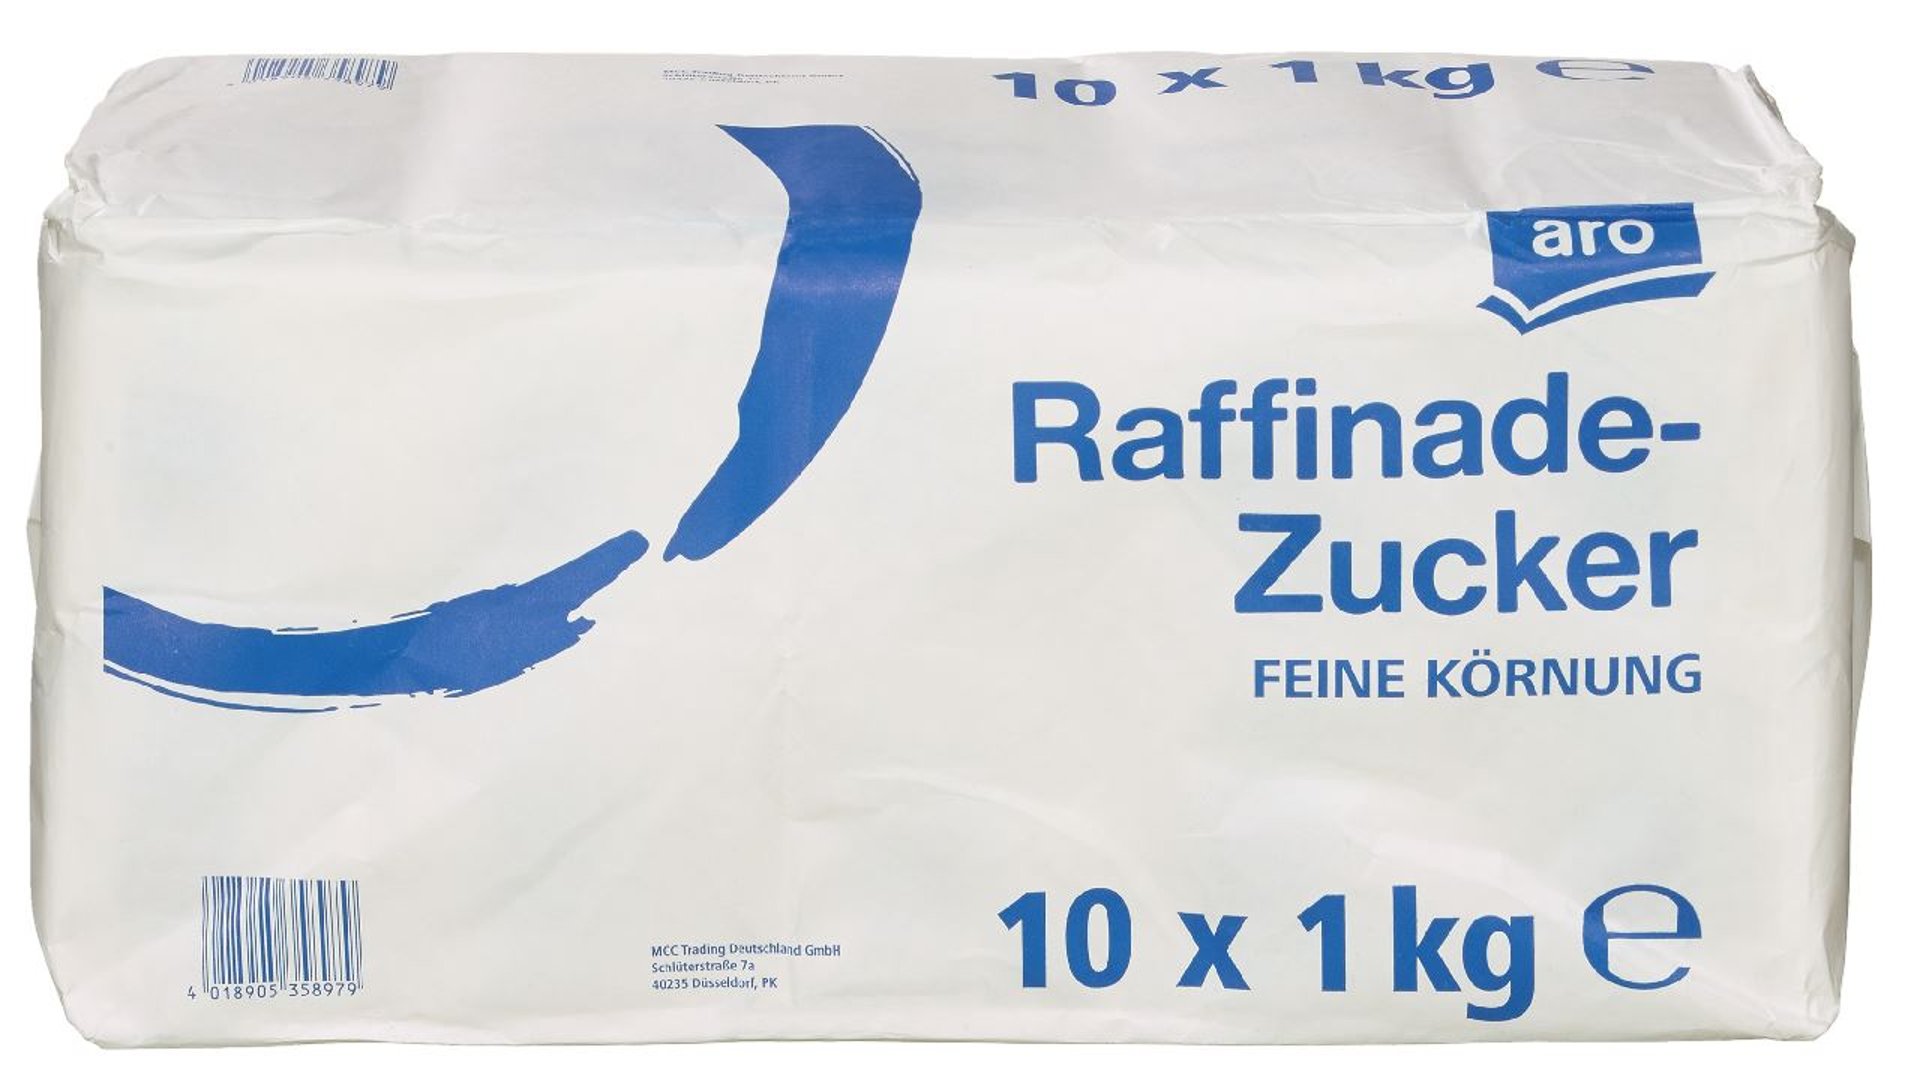 aro - Raffinade Zucker - 10 x 1,00 kg Packungen